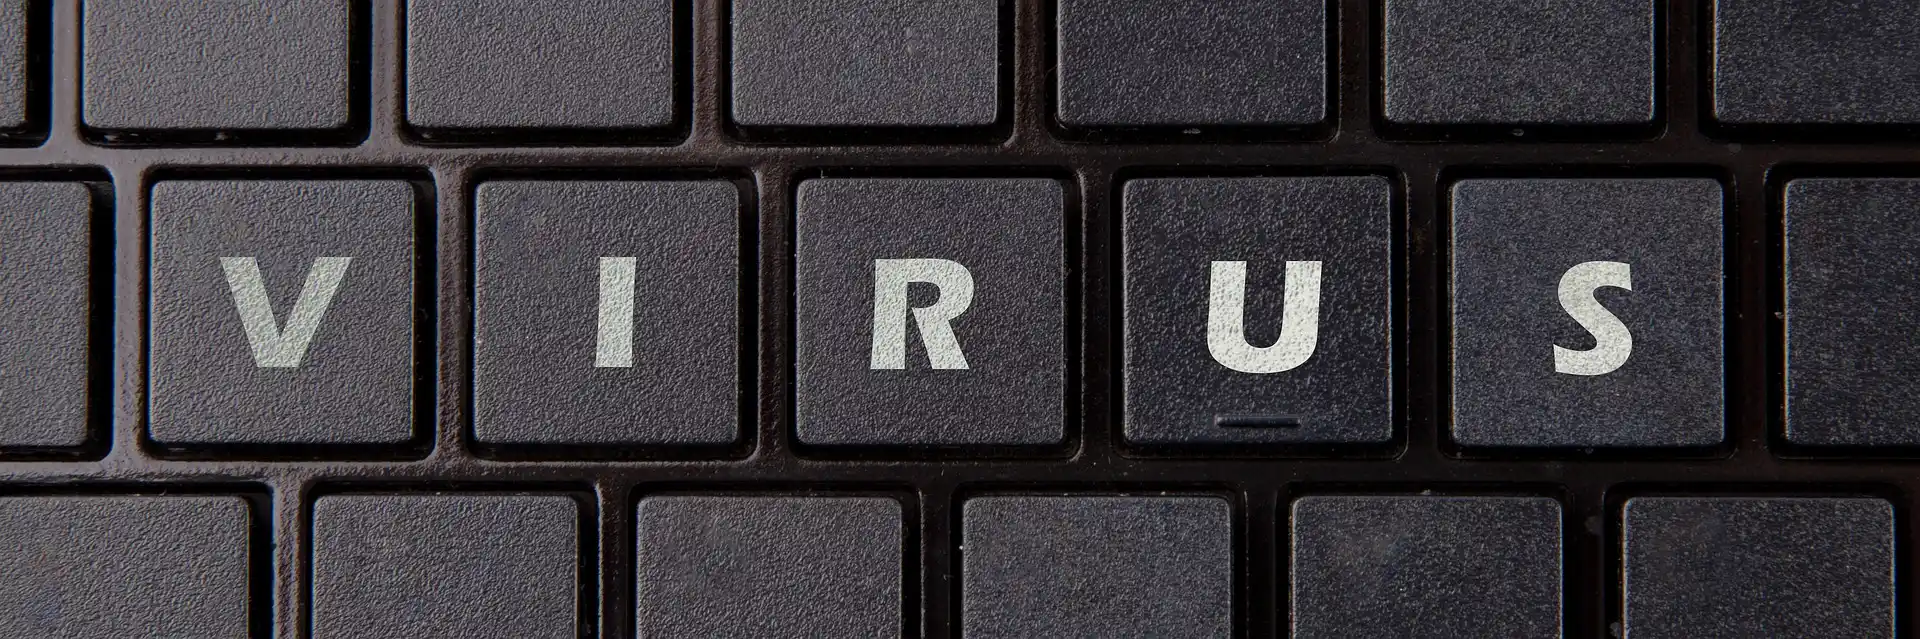 Bild einer Tastatur mit Beschriftung "Virus".